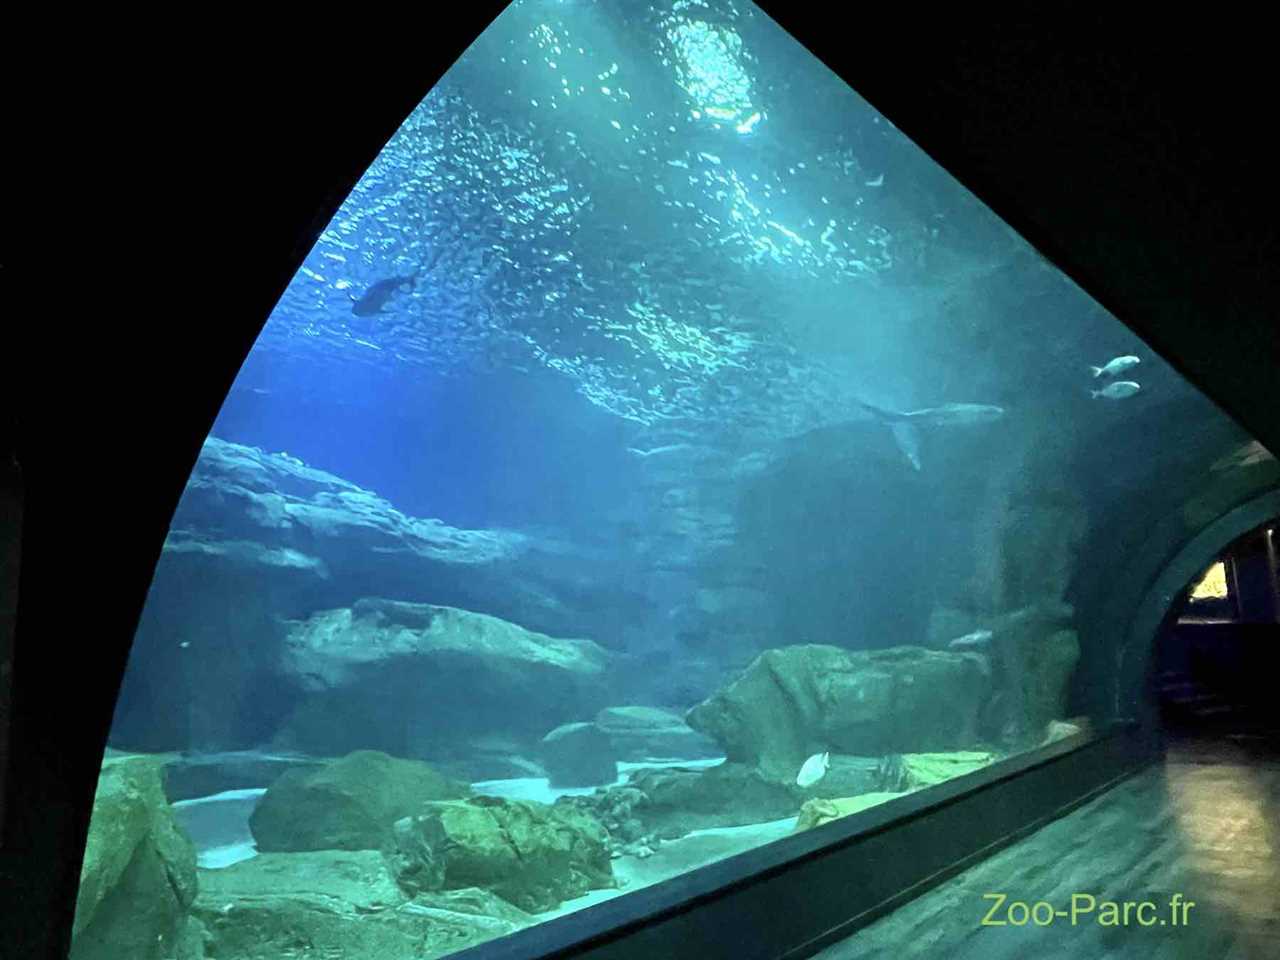 Reduction aquarium de paris